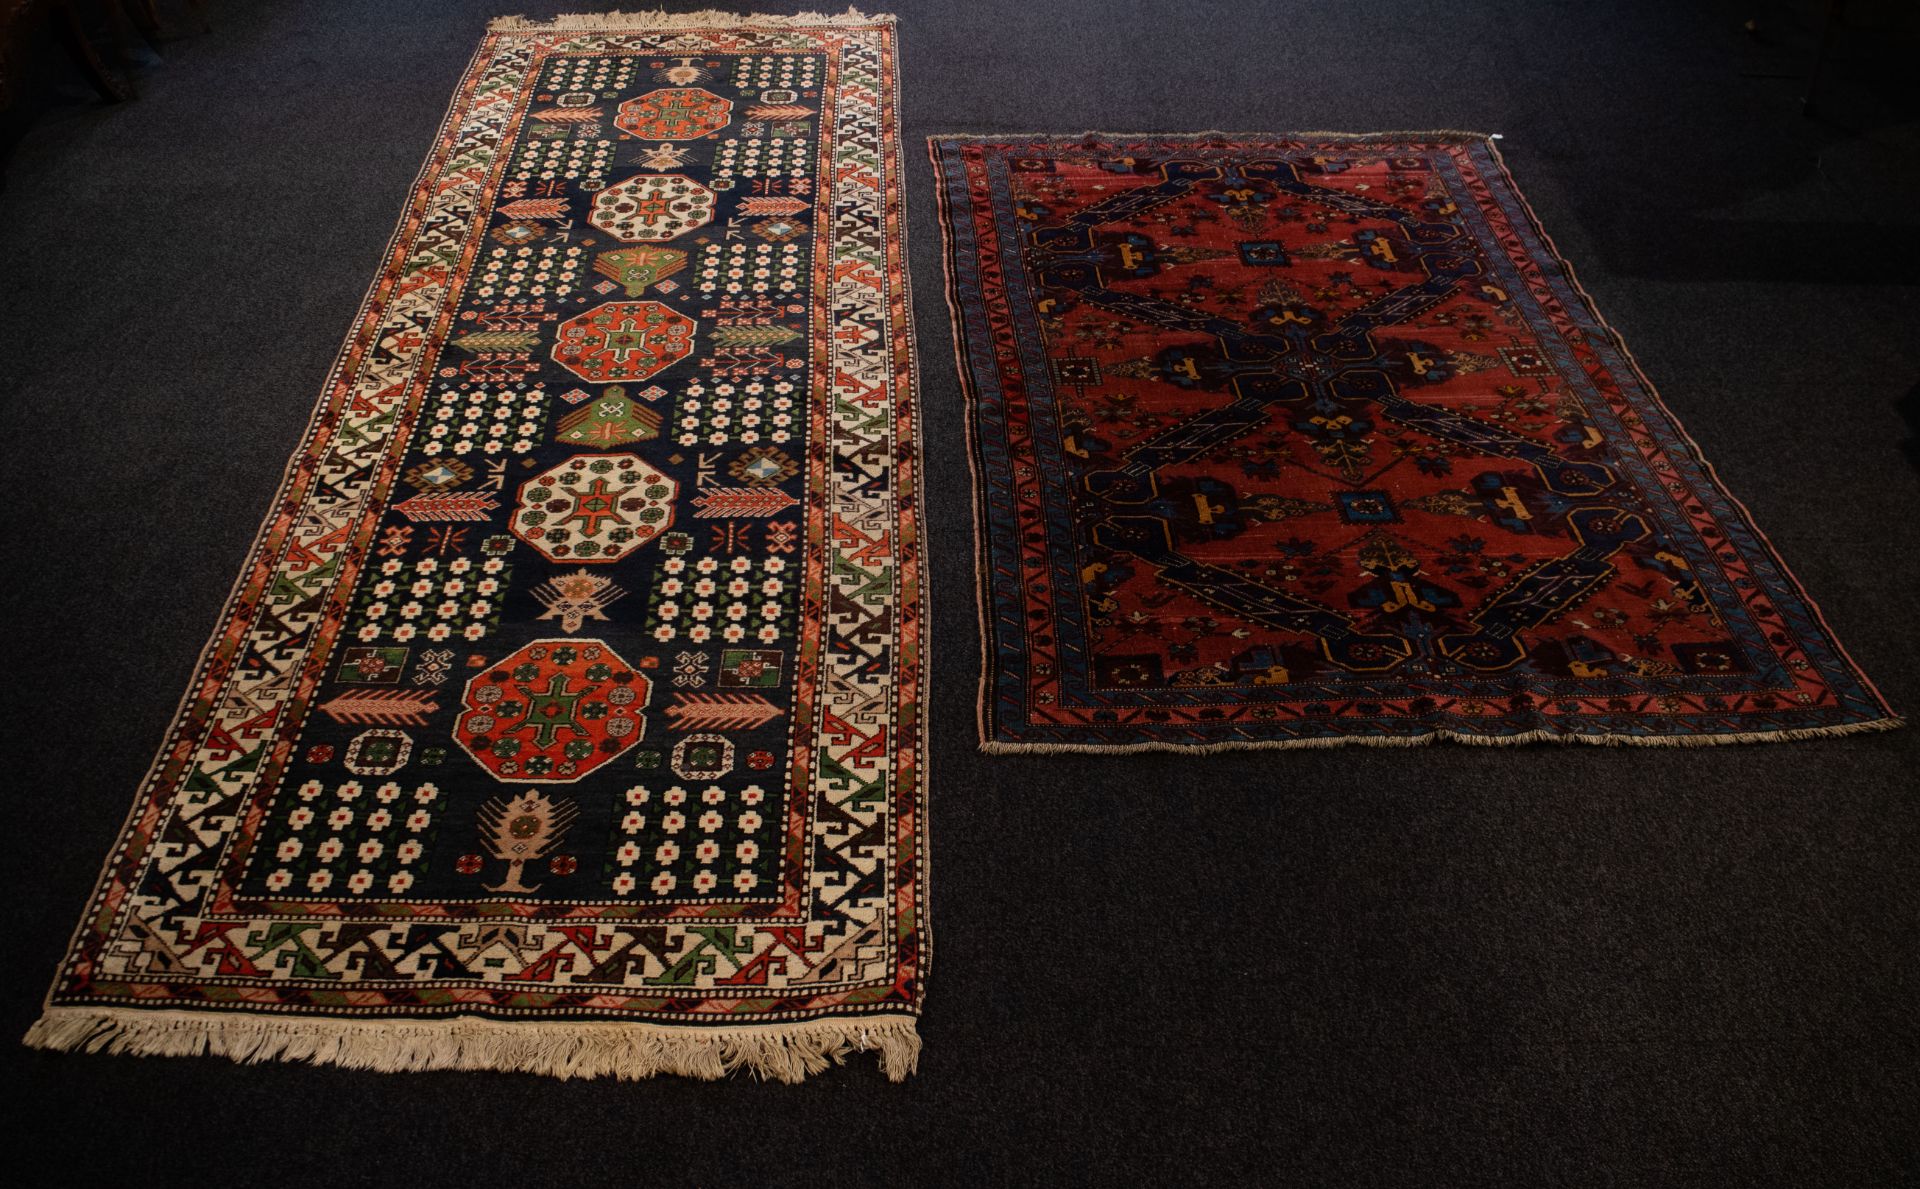 2 Orientel rugs